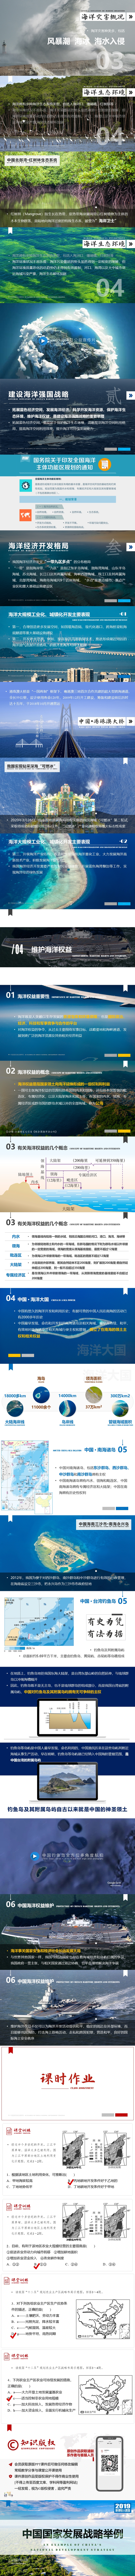 [2019版 新课标] 2.5.3 中国国家发展战略举例-800PX-02.jpg